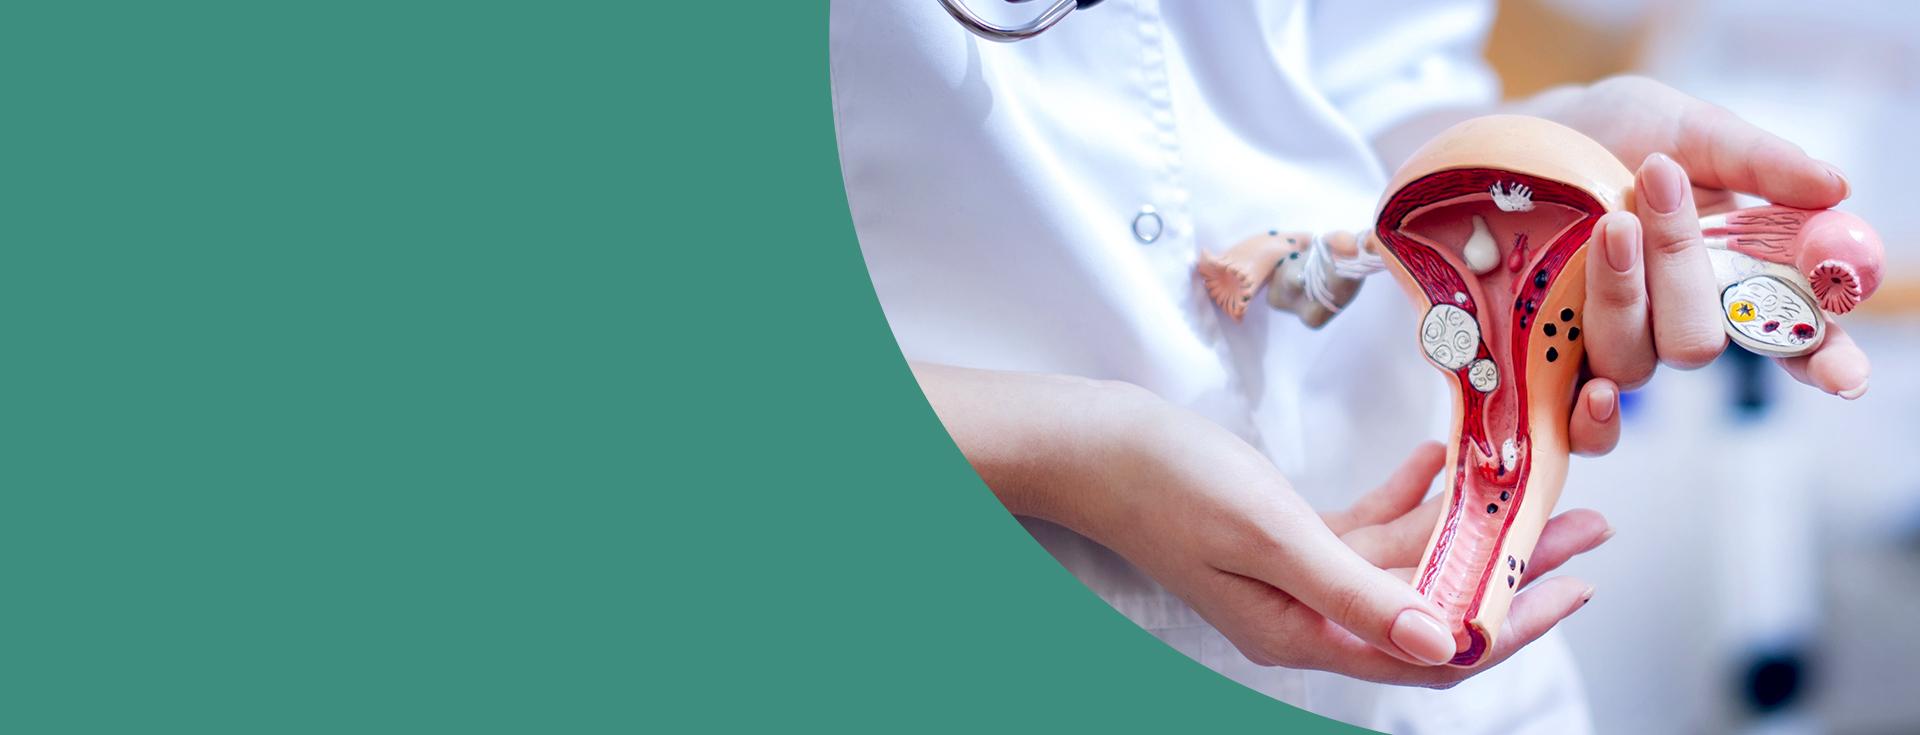 Mãos brancas de uma médica segurando um útero feito para aulas de medicina